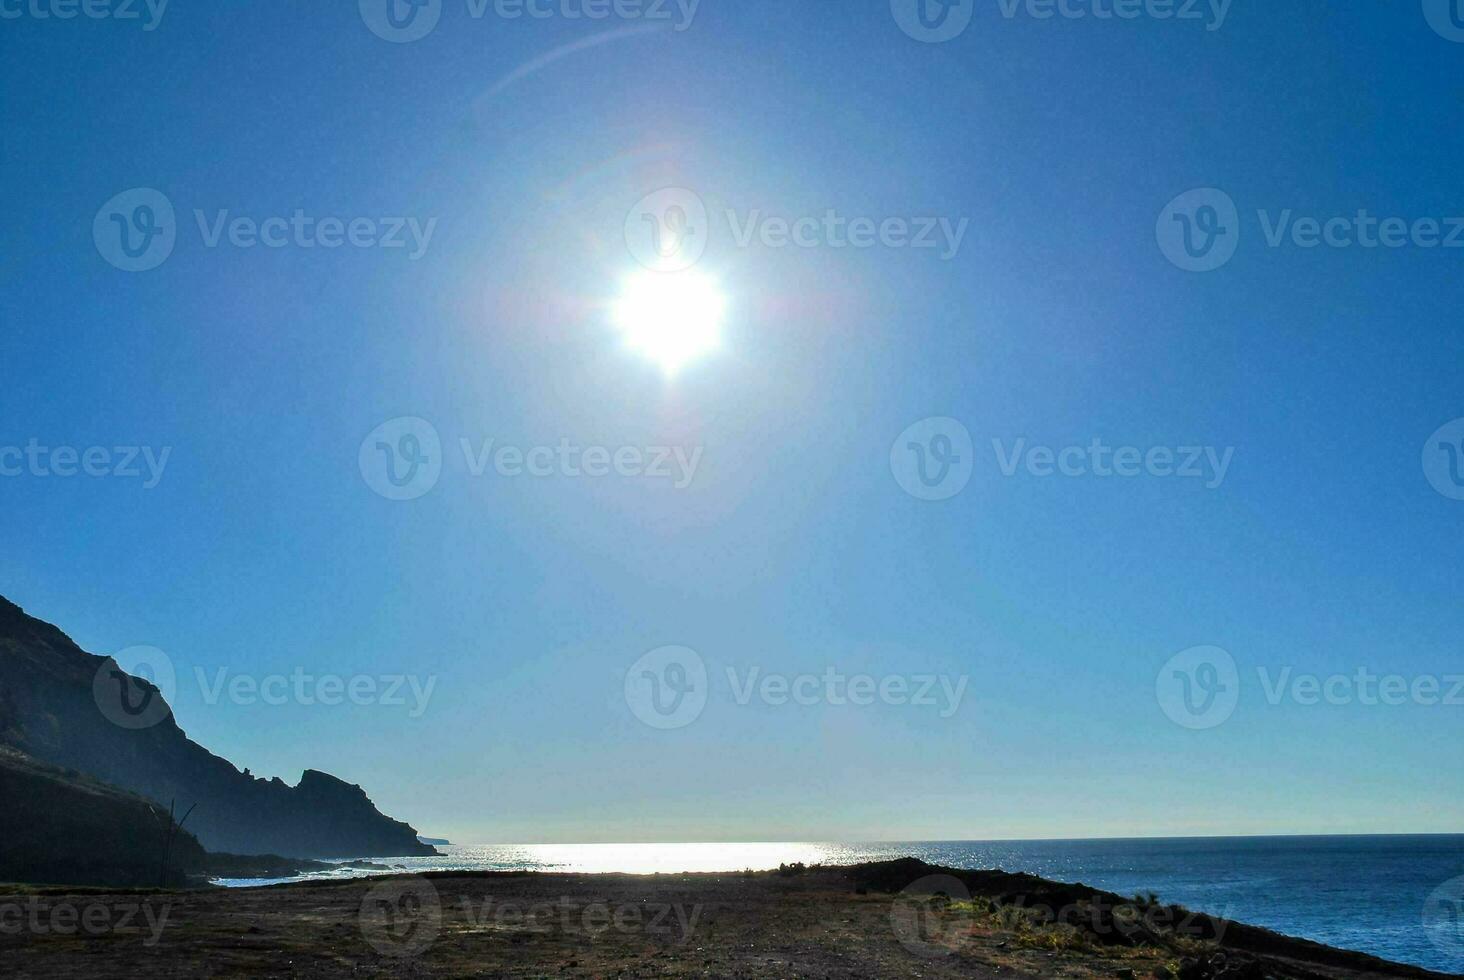 toneel- strand visie foto